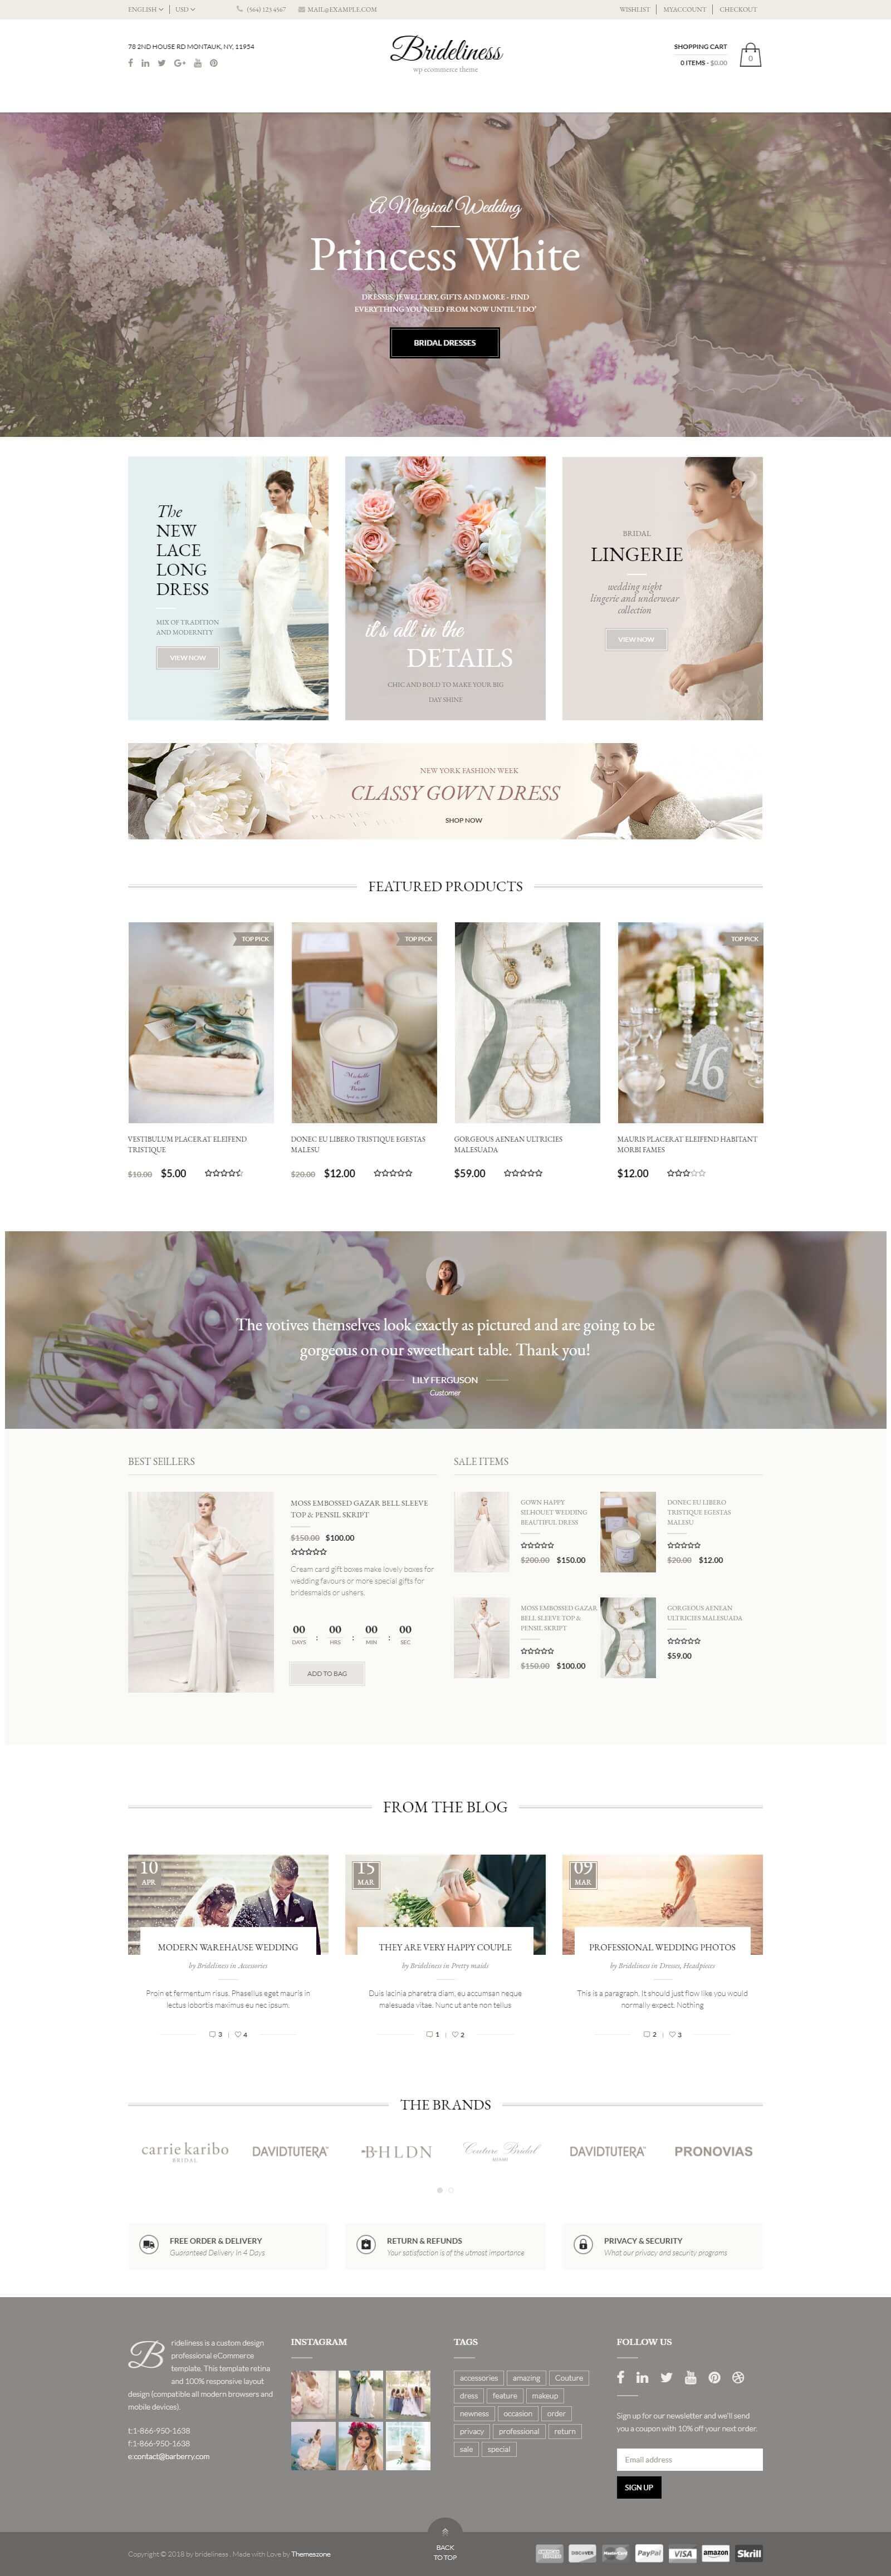 Mẫu website cho thuê áo cưới đẹp mắt, ấn tượng, chuẩn seo